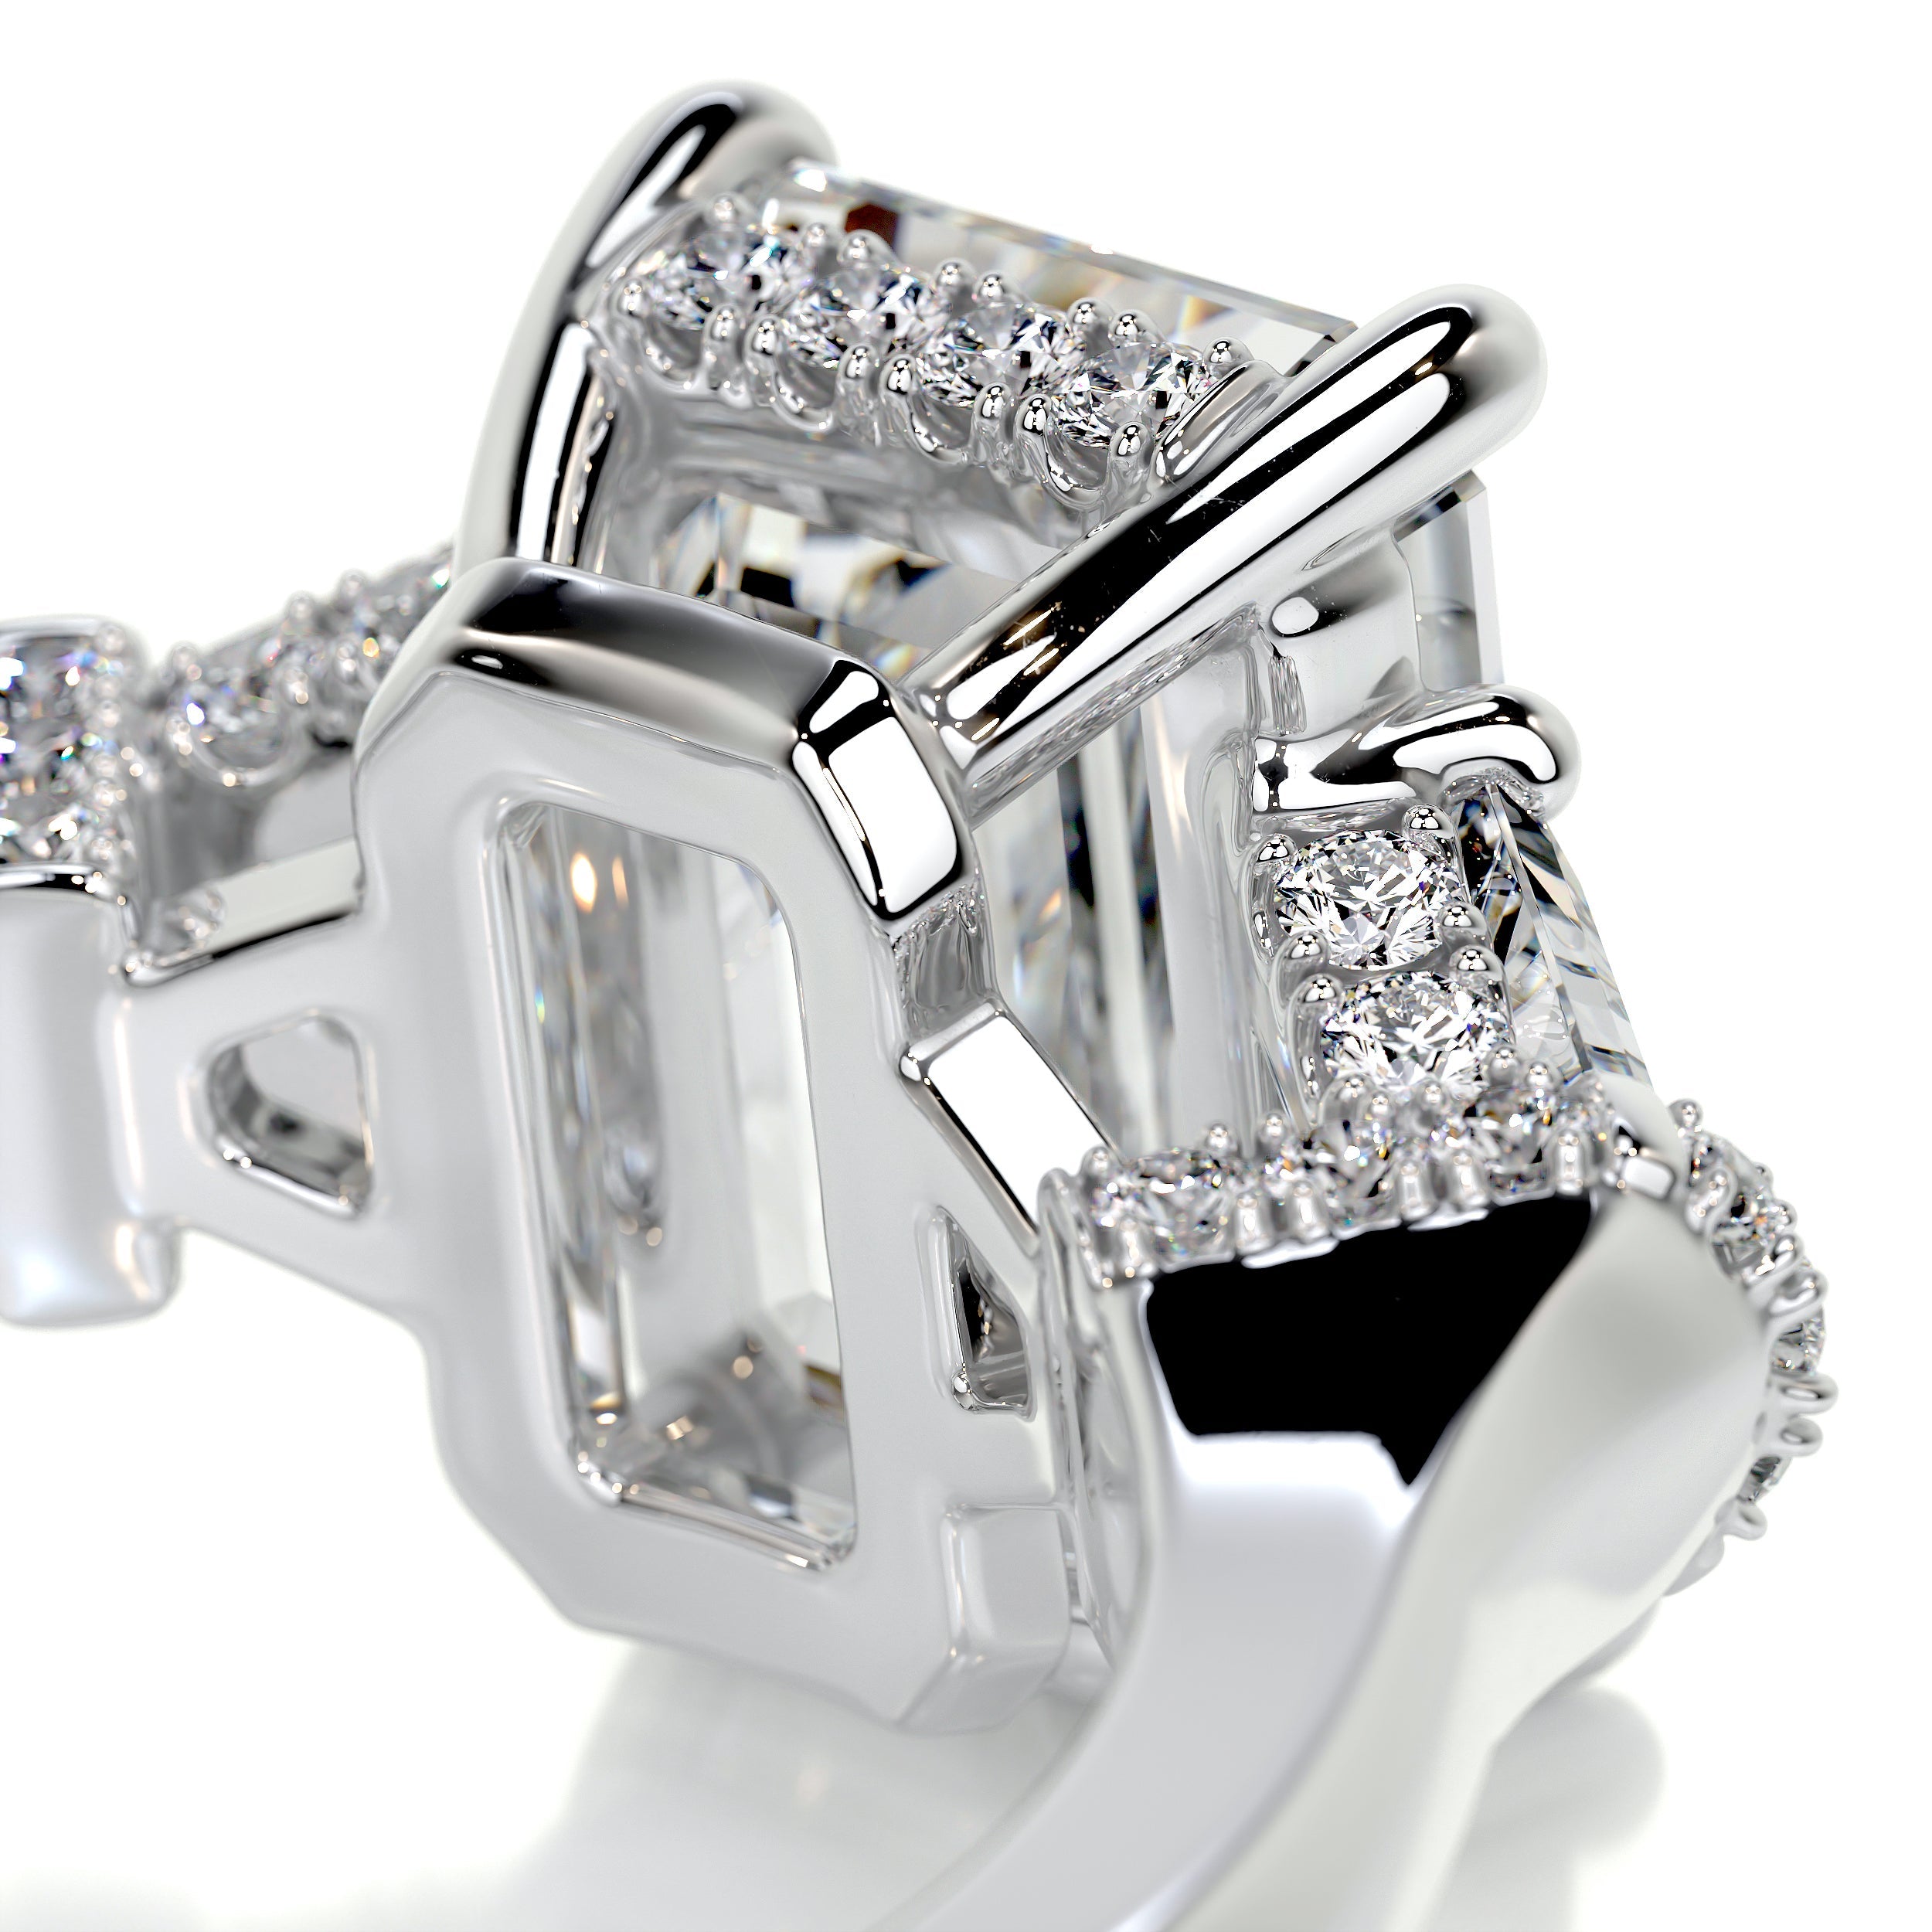 Viola Diamond Engagement Ring   (3.6 Carat) -18K White Gold